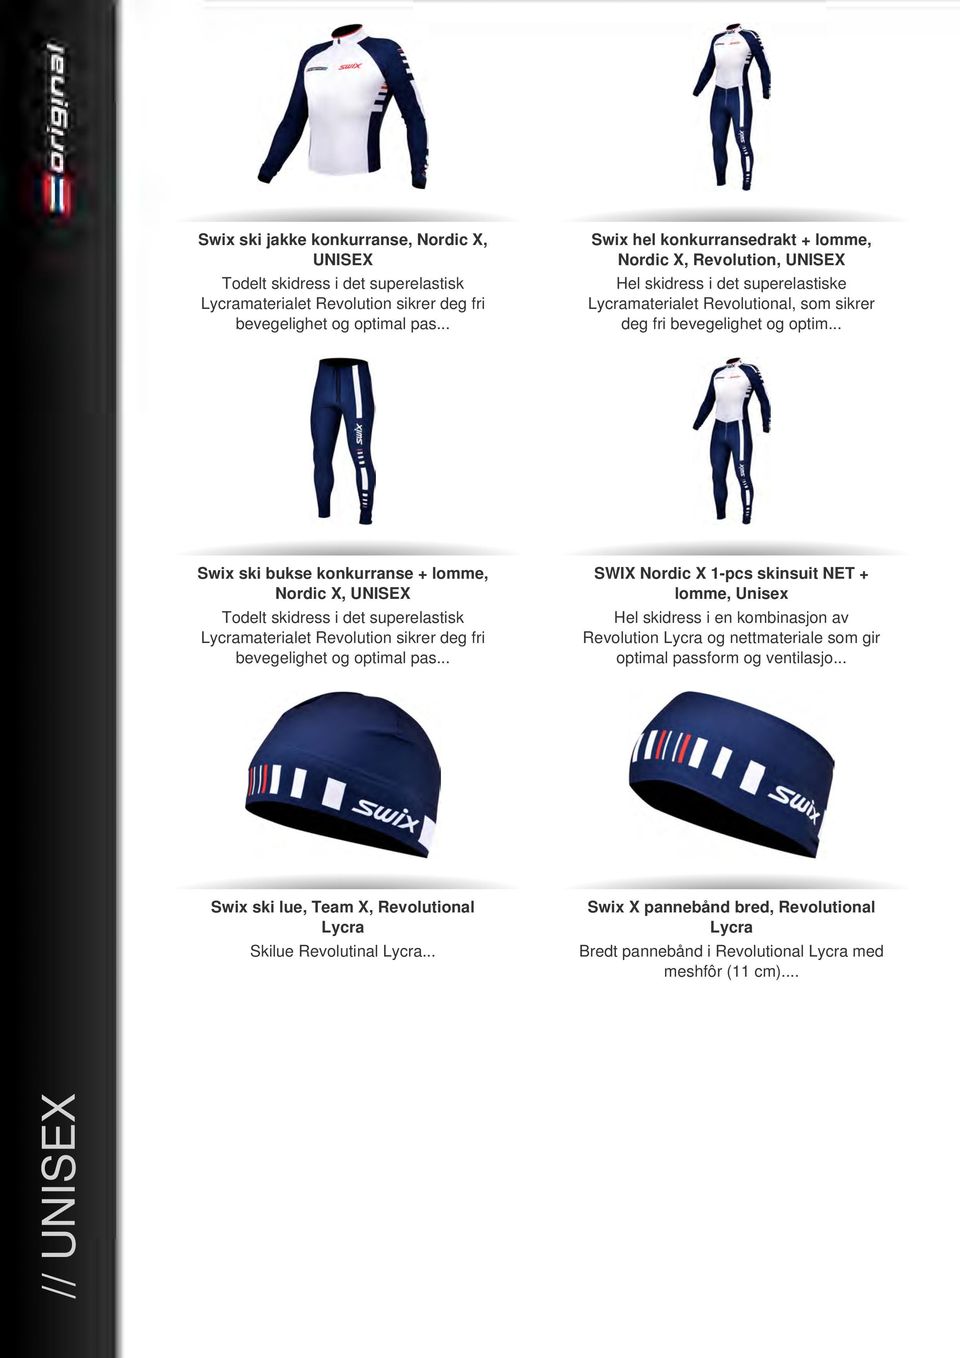 .. Swix ski bukse konkurranse + lomme, Nordic X, UNISEX Todelt skidress i det superelastisk Lycramaterialet Revolution sikrer deg fri bevegelighet og optimal pas.